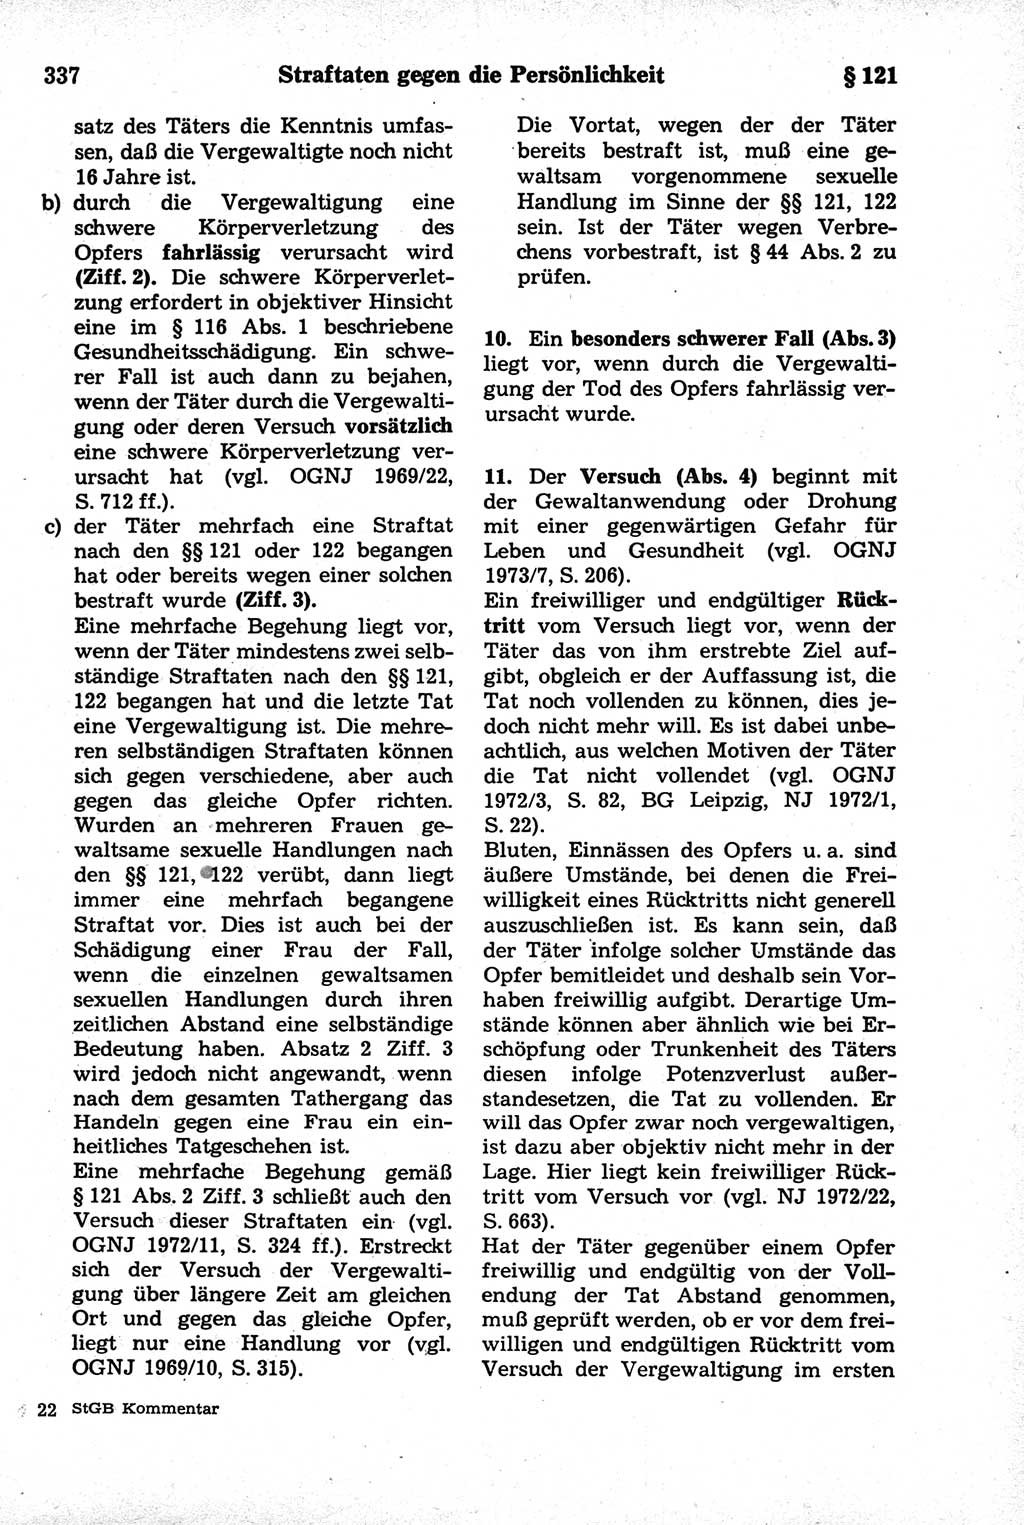 Strafrecht der Deutschen Demokratischen Republik (DDR), Kommentar zum Strafgesetzbuch (StGB) 1981, Seite 337 (Strafr. DDR Komm. StGB 1981, S. 337)